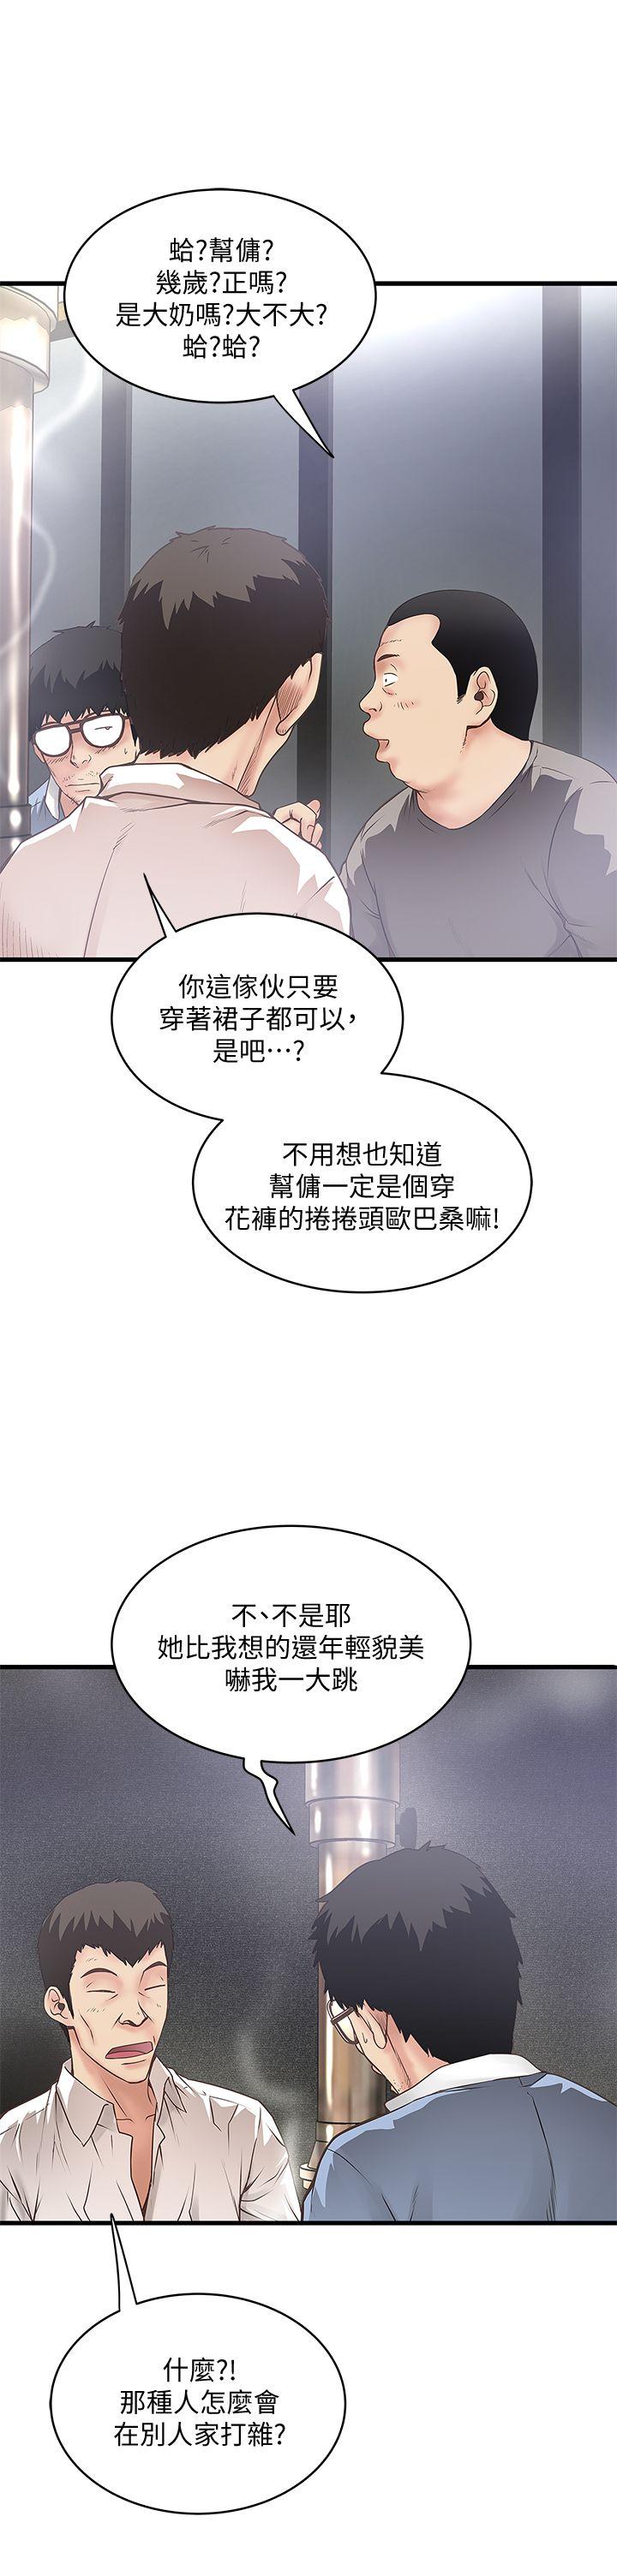 韩国污漫画 下女,初希 第8话-俊皓第一次花天酒地 6